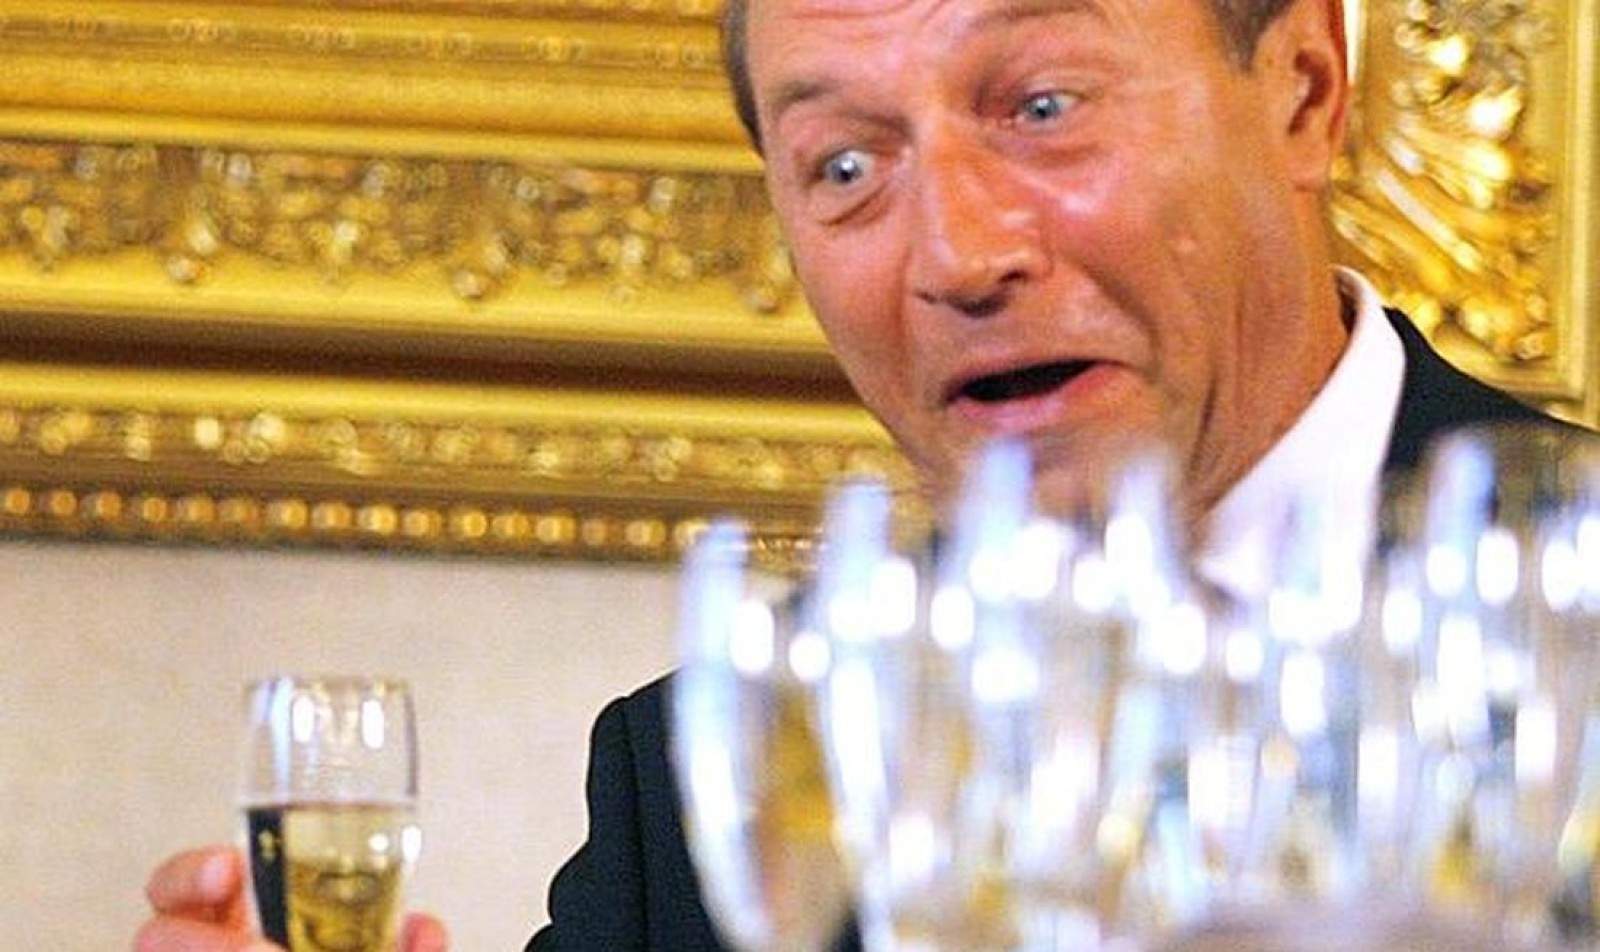 Șofer în comă alcoolică după ce a făcut amiabila cu Băsescu